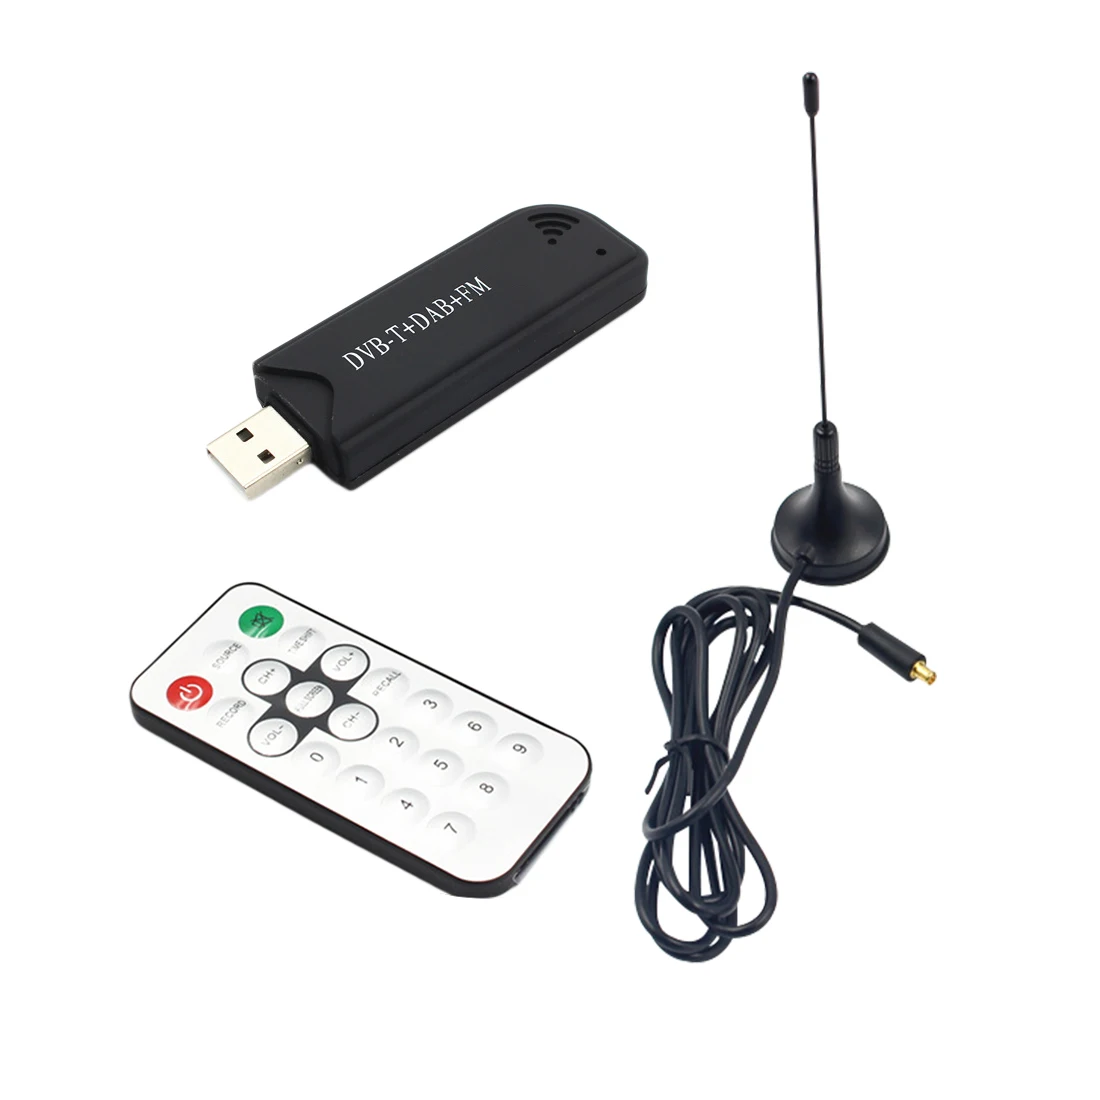 Marsnaska Высокое качество USB 2.0 программного обеспечения радио dvb-t FC0013 + R820T2 SDR цифровой ТВ приемник Придерживайтесь горячий продукт